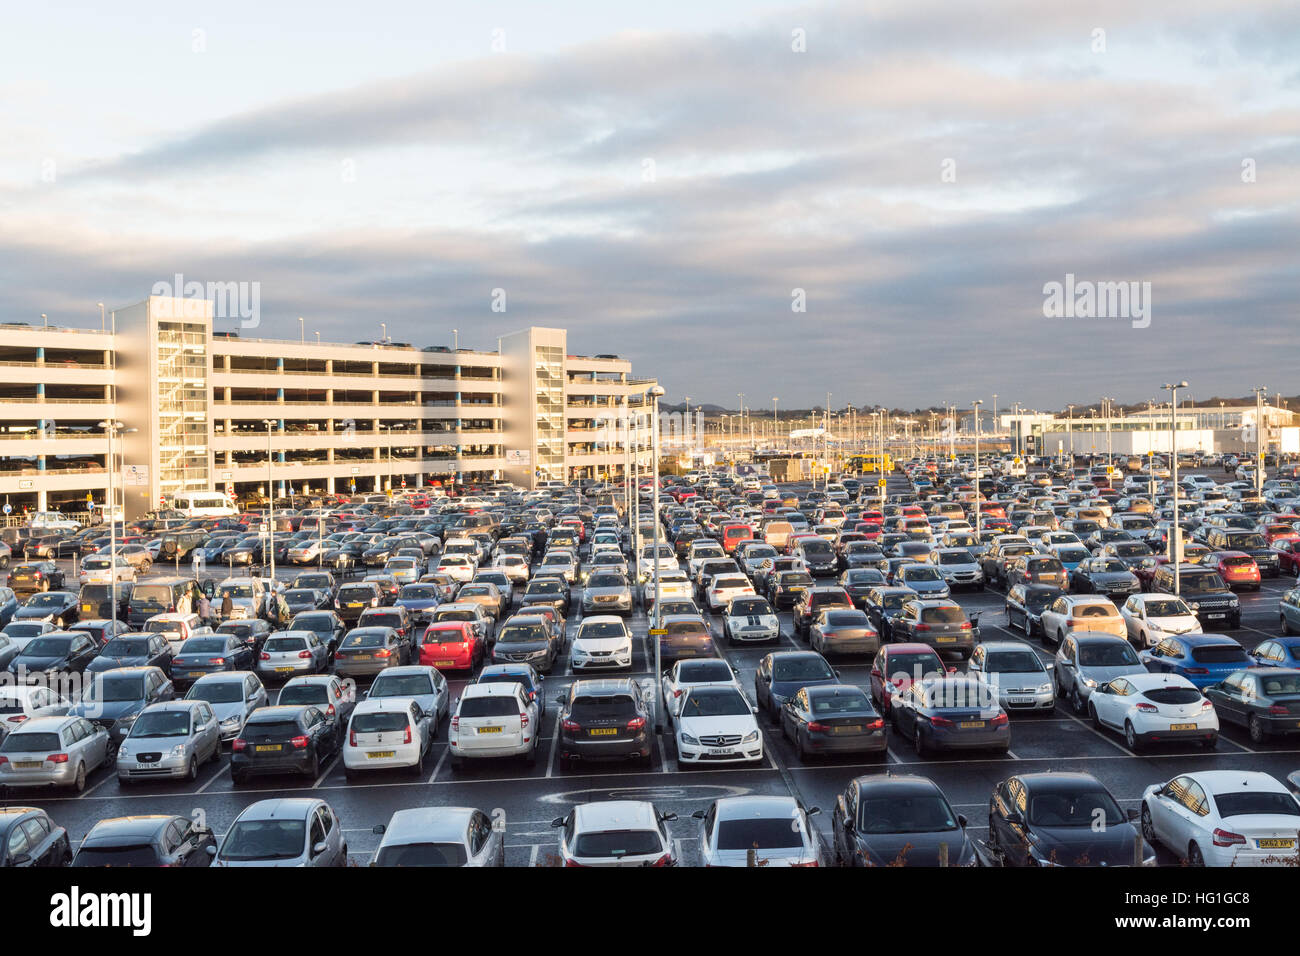 Aeroporto di Edimburgo - parcheggio auto parcheggiate in airport car park - Edimburgo, Scozia, Regno Unito Foto Stock